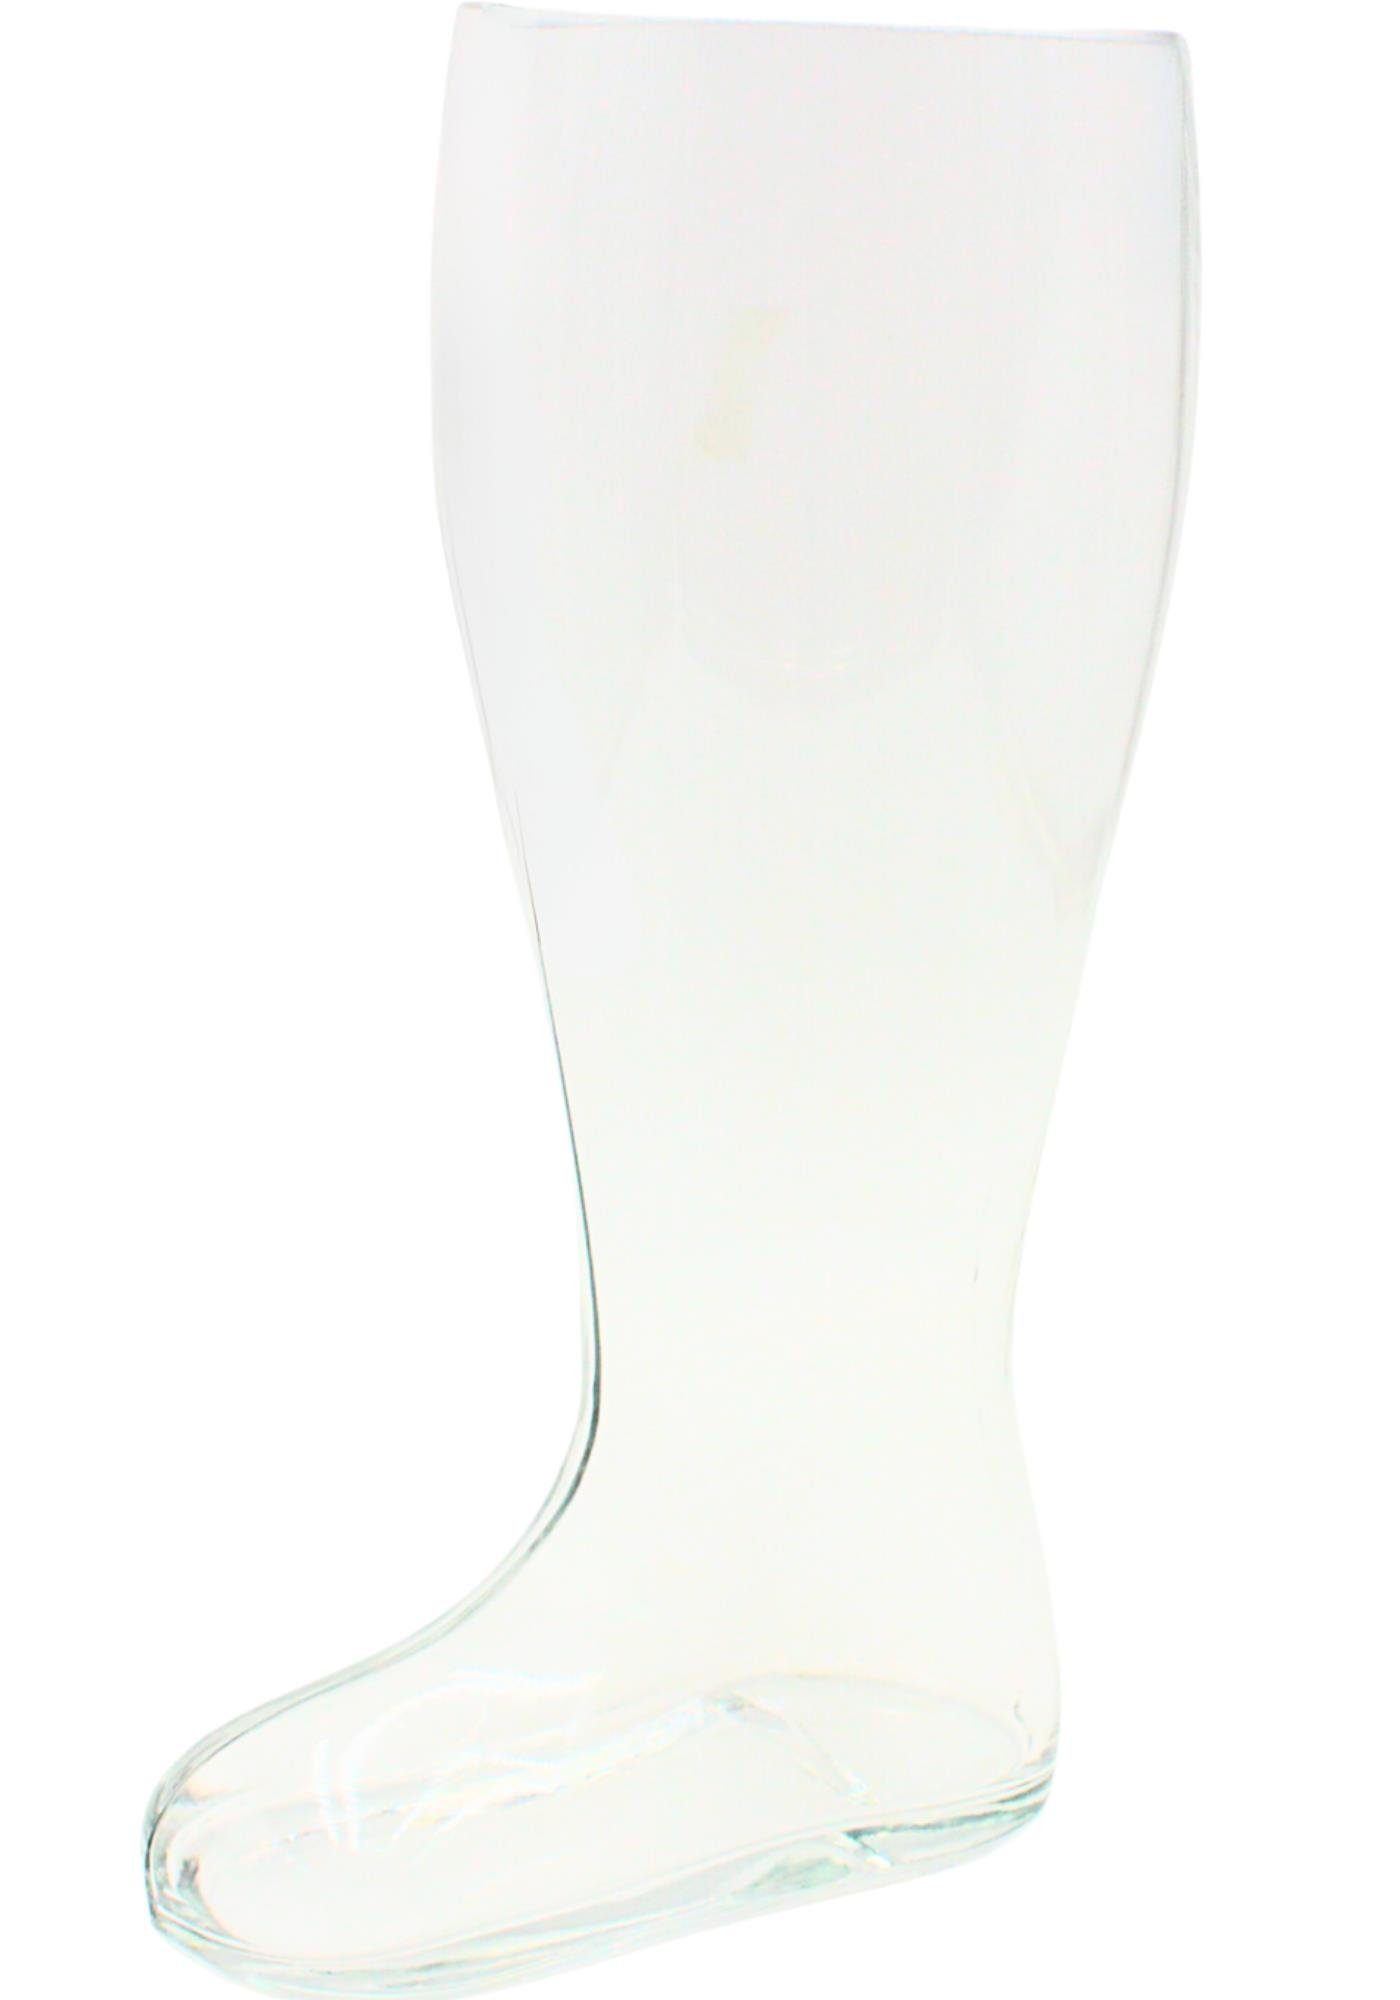 H: cm aus Stiefel, ca. 2 Transparent, für Trinkflasche L Glas, Größe XXL-Bierglas, Bierstiefel, 33 Dekohelden24